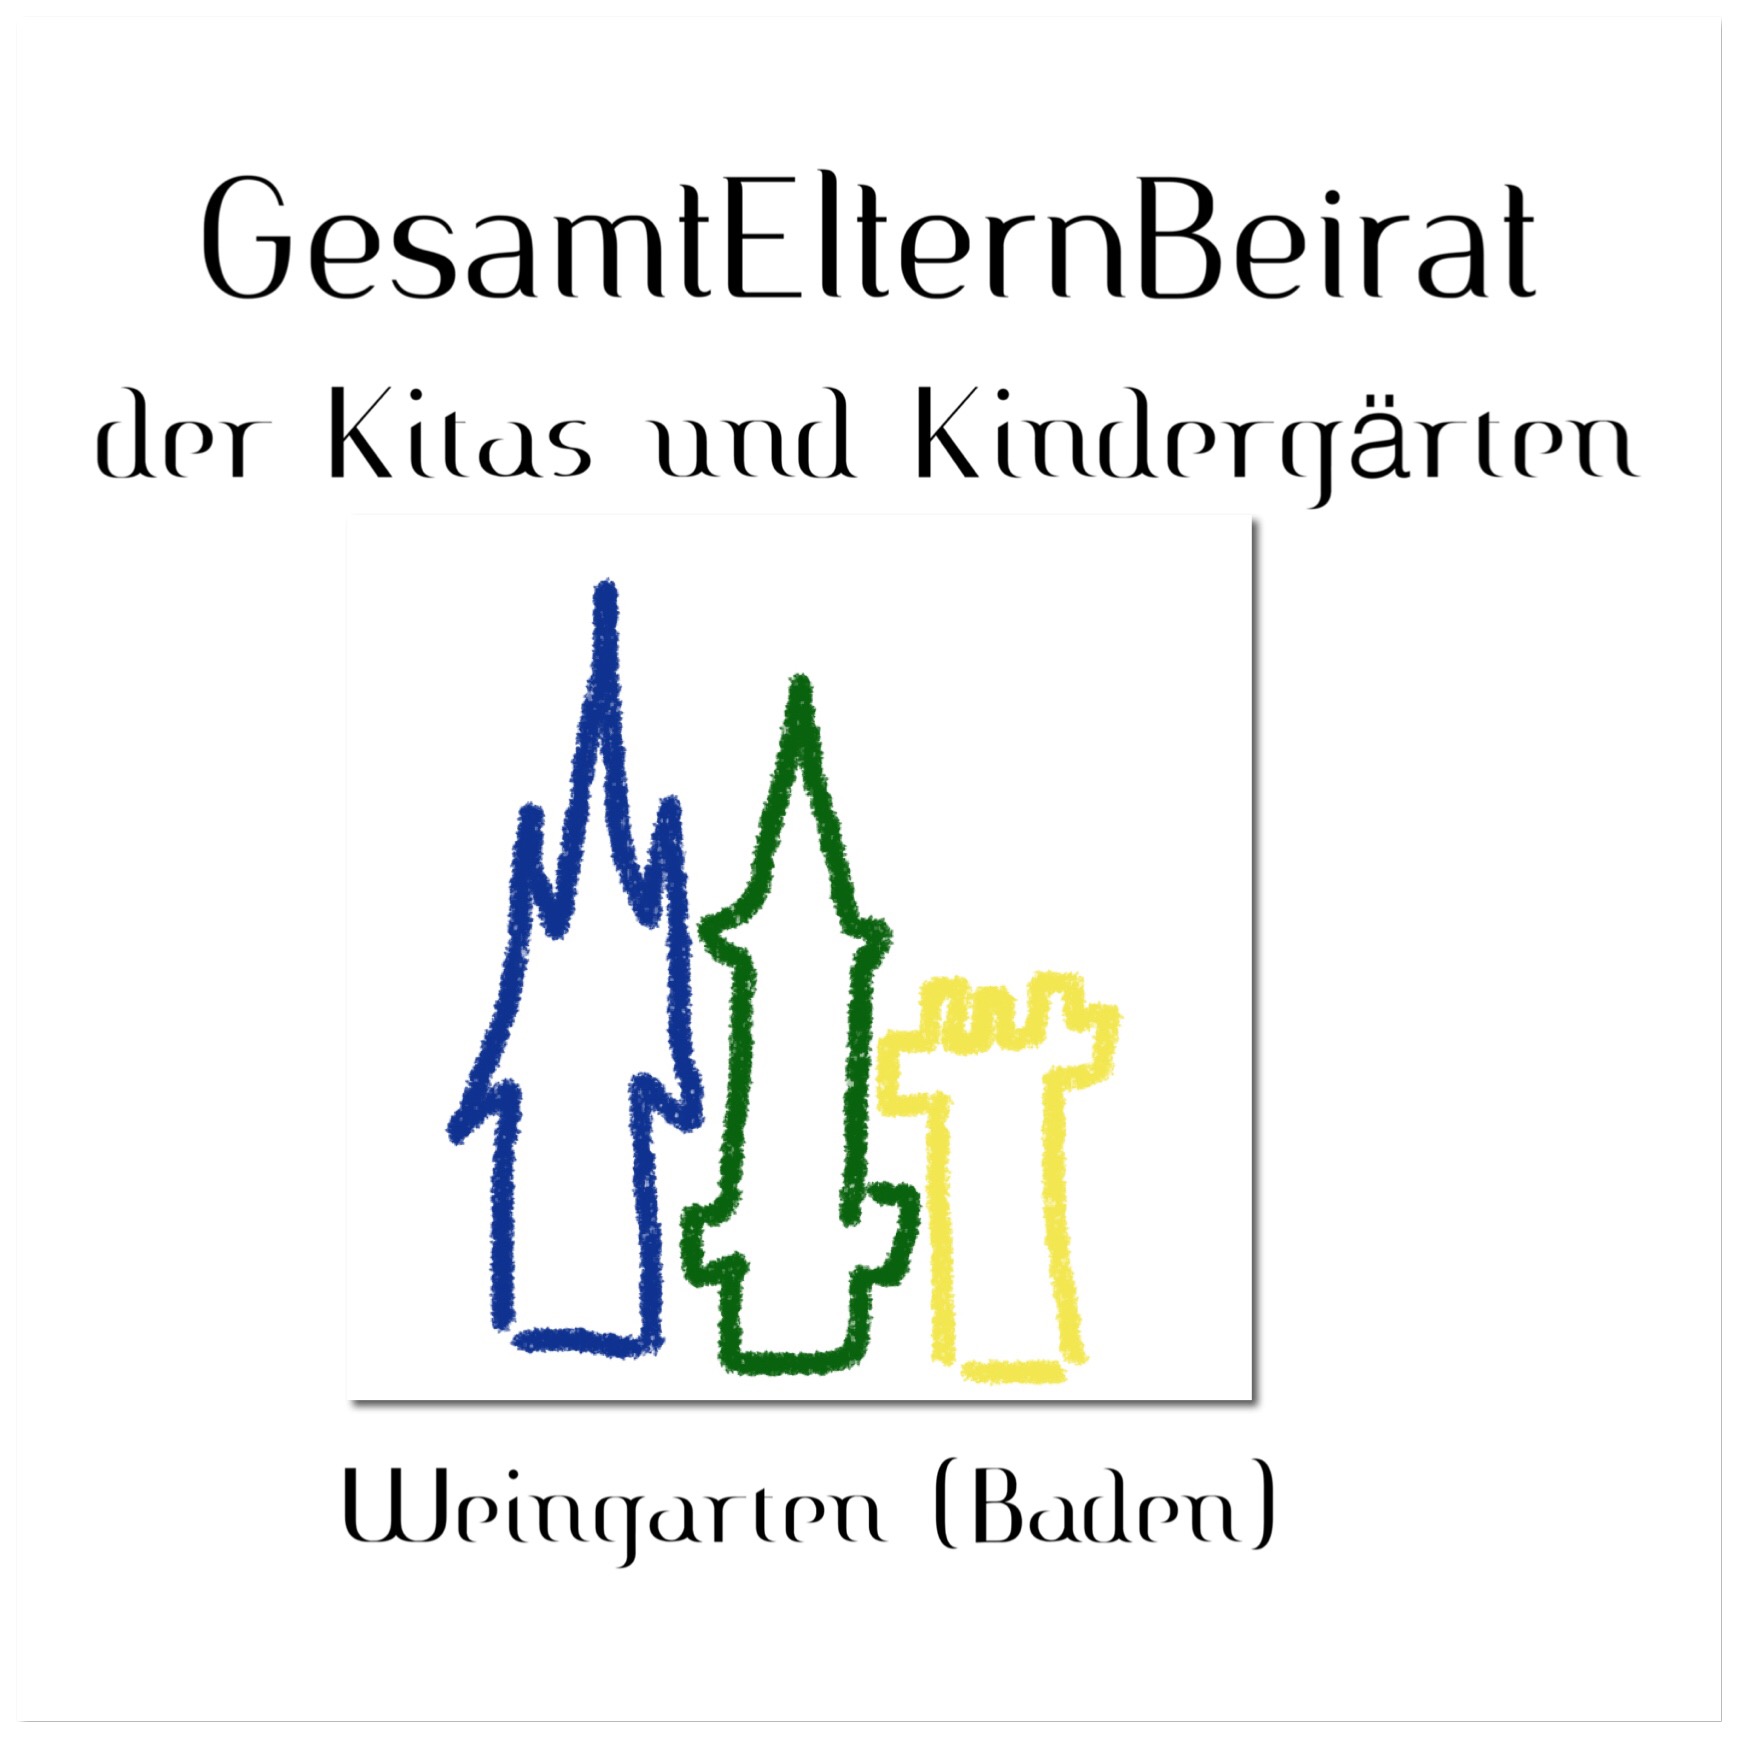  Gesamtelternbeirat der Kitas und Kindergärten in Weingarten (Baden) 